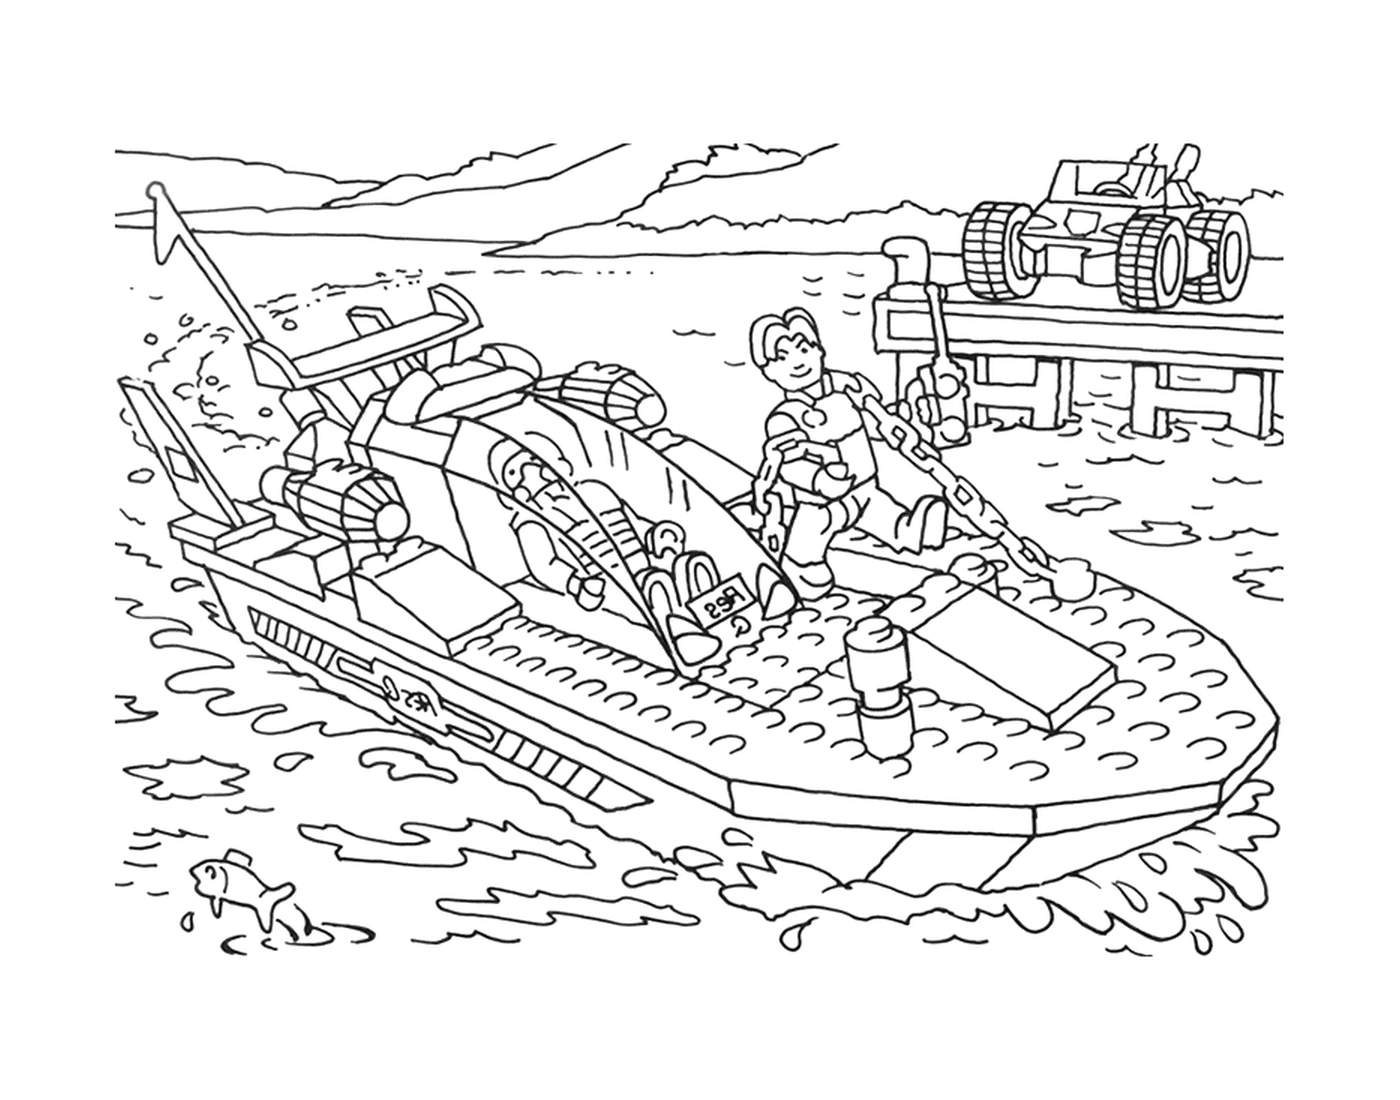  Man in a Lego boat 